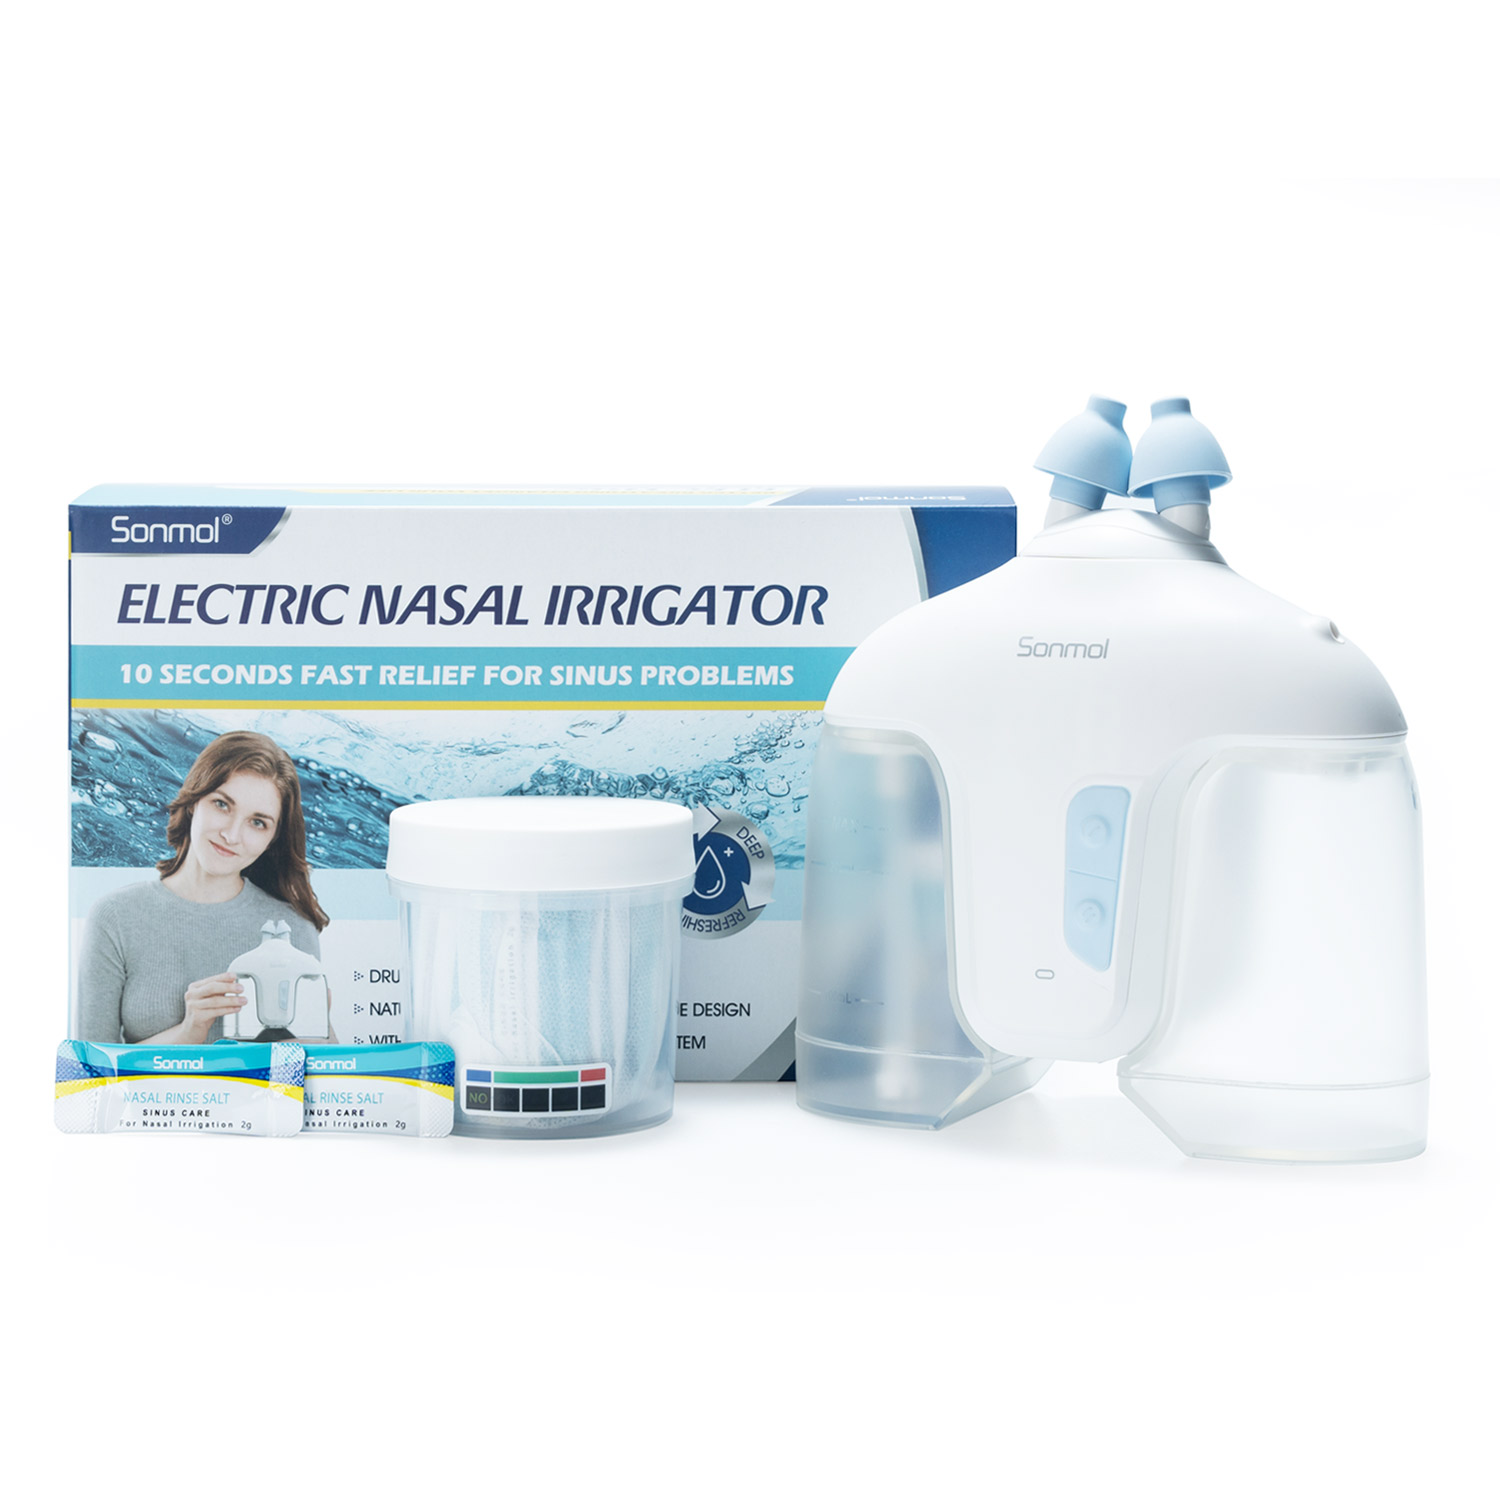 Sonmol Electrical Nasal Irrigation System / Nasal Irrigator